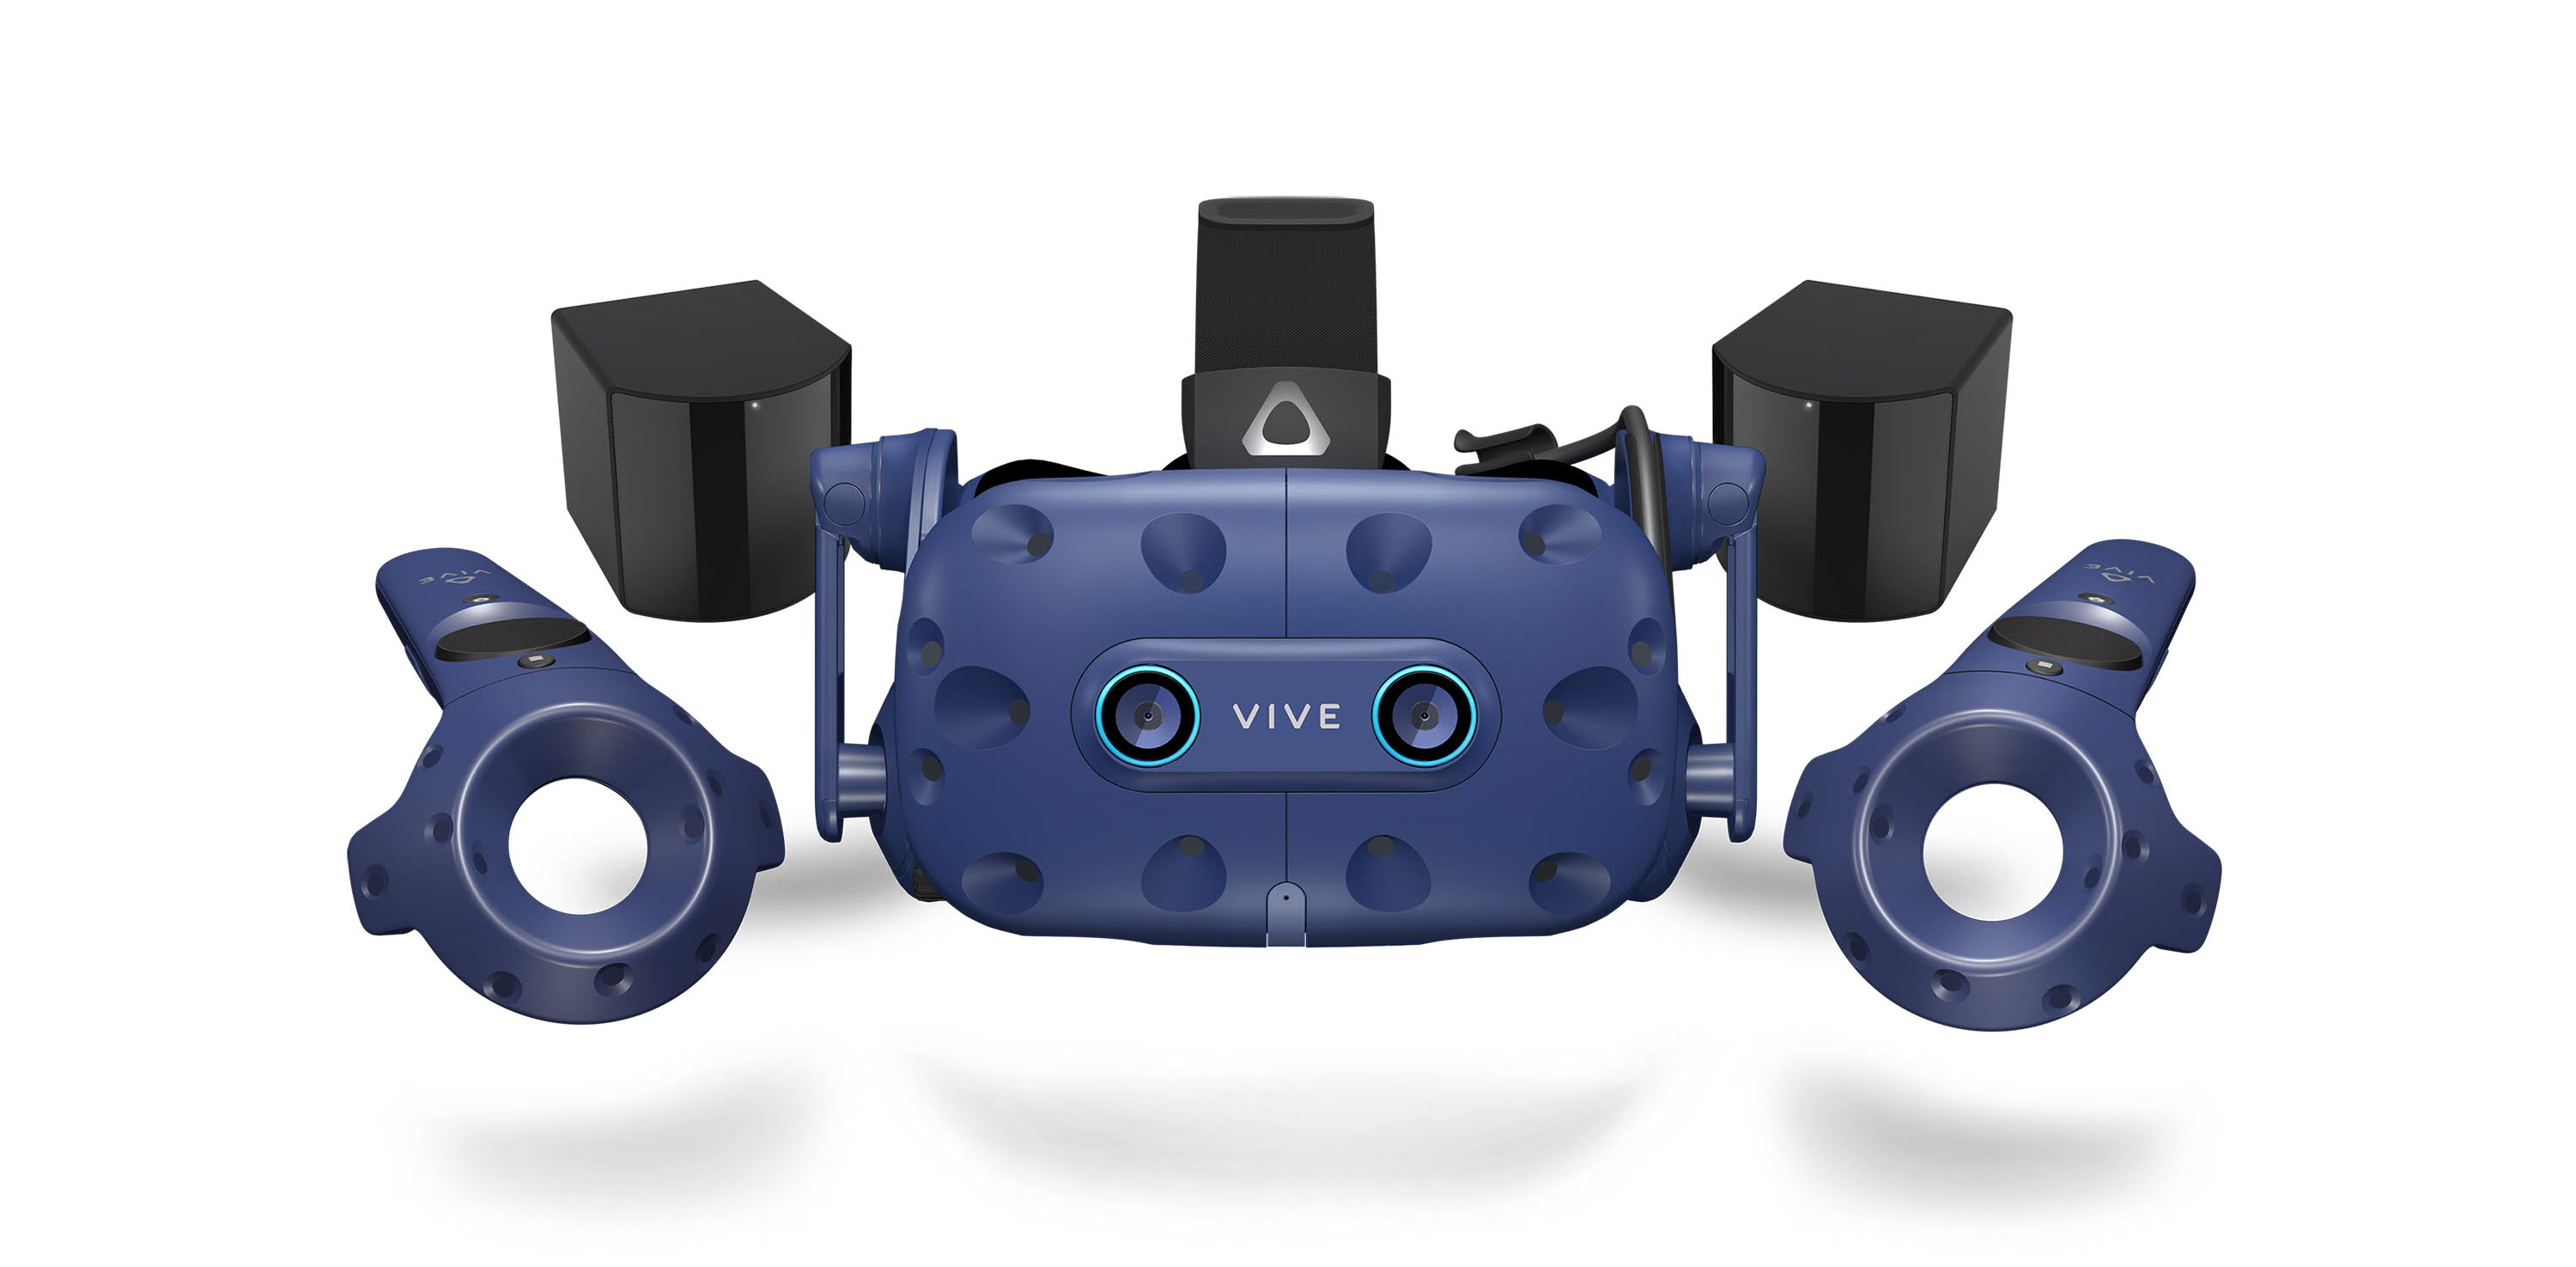 HTC VIVE Pro Eye full kit